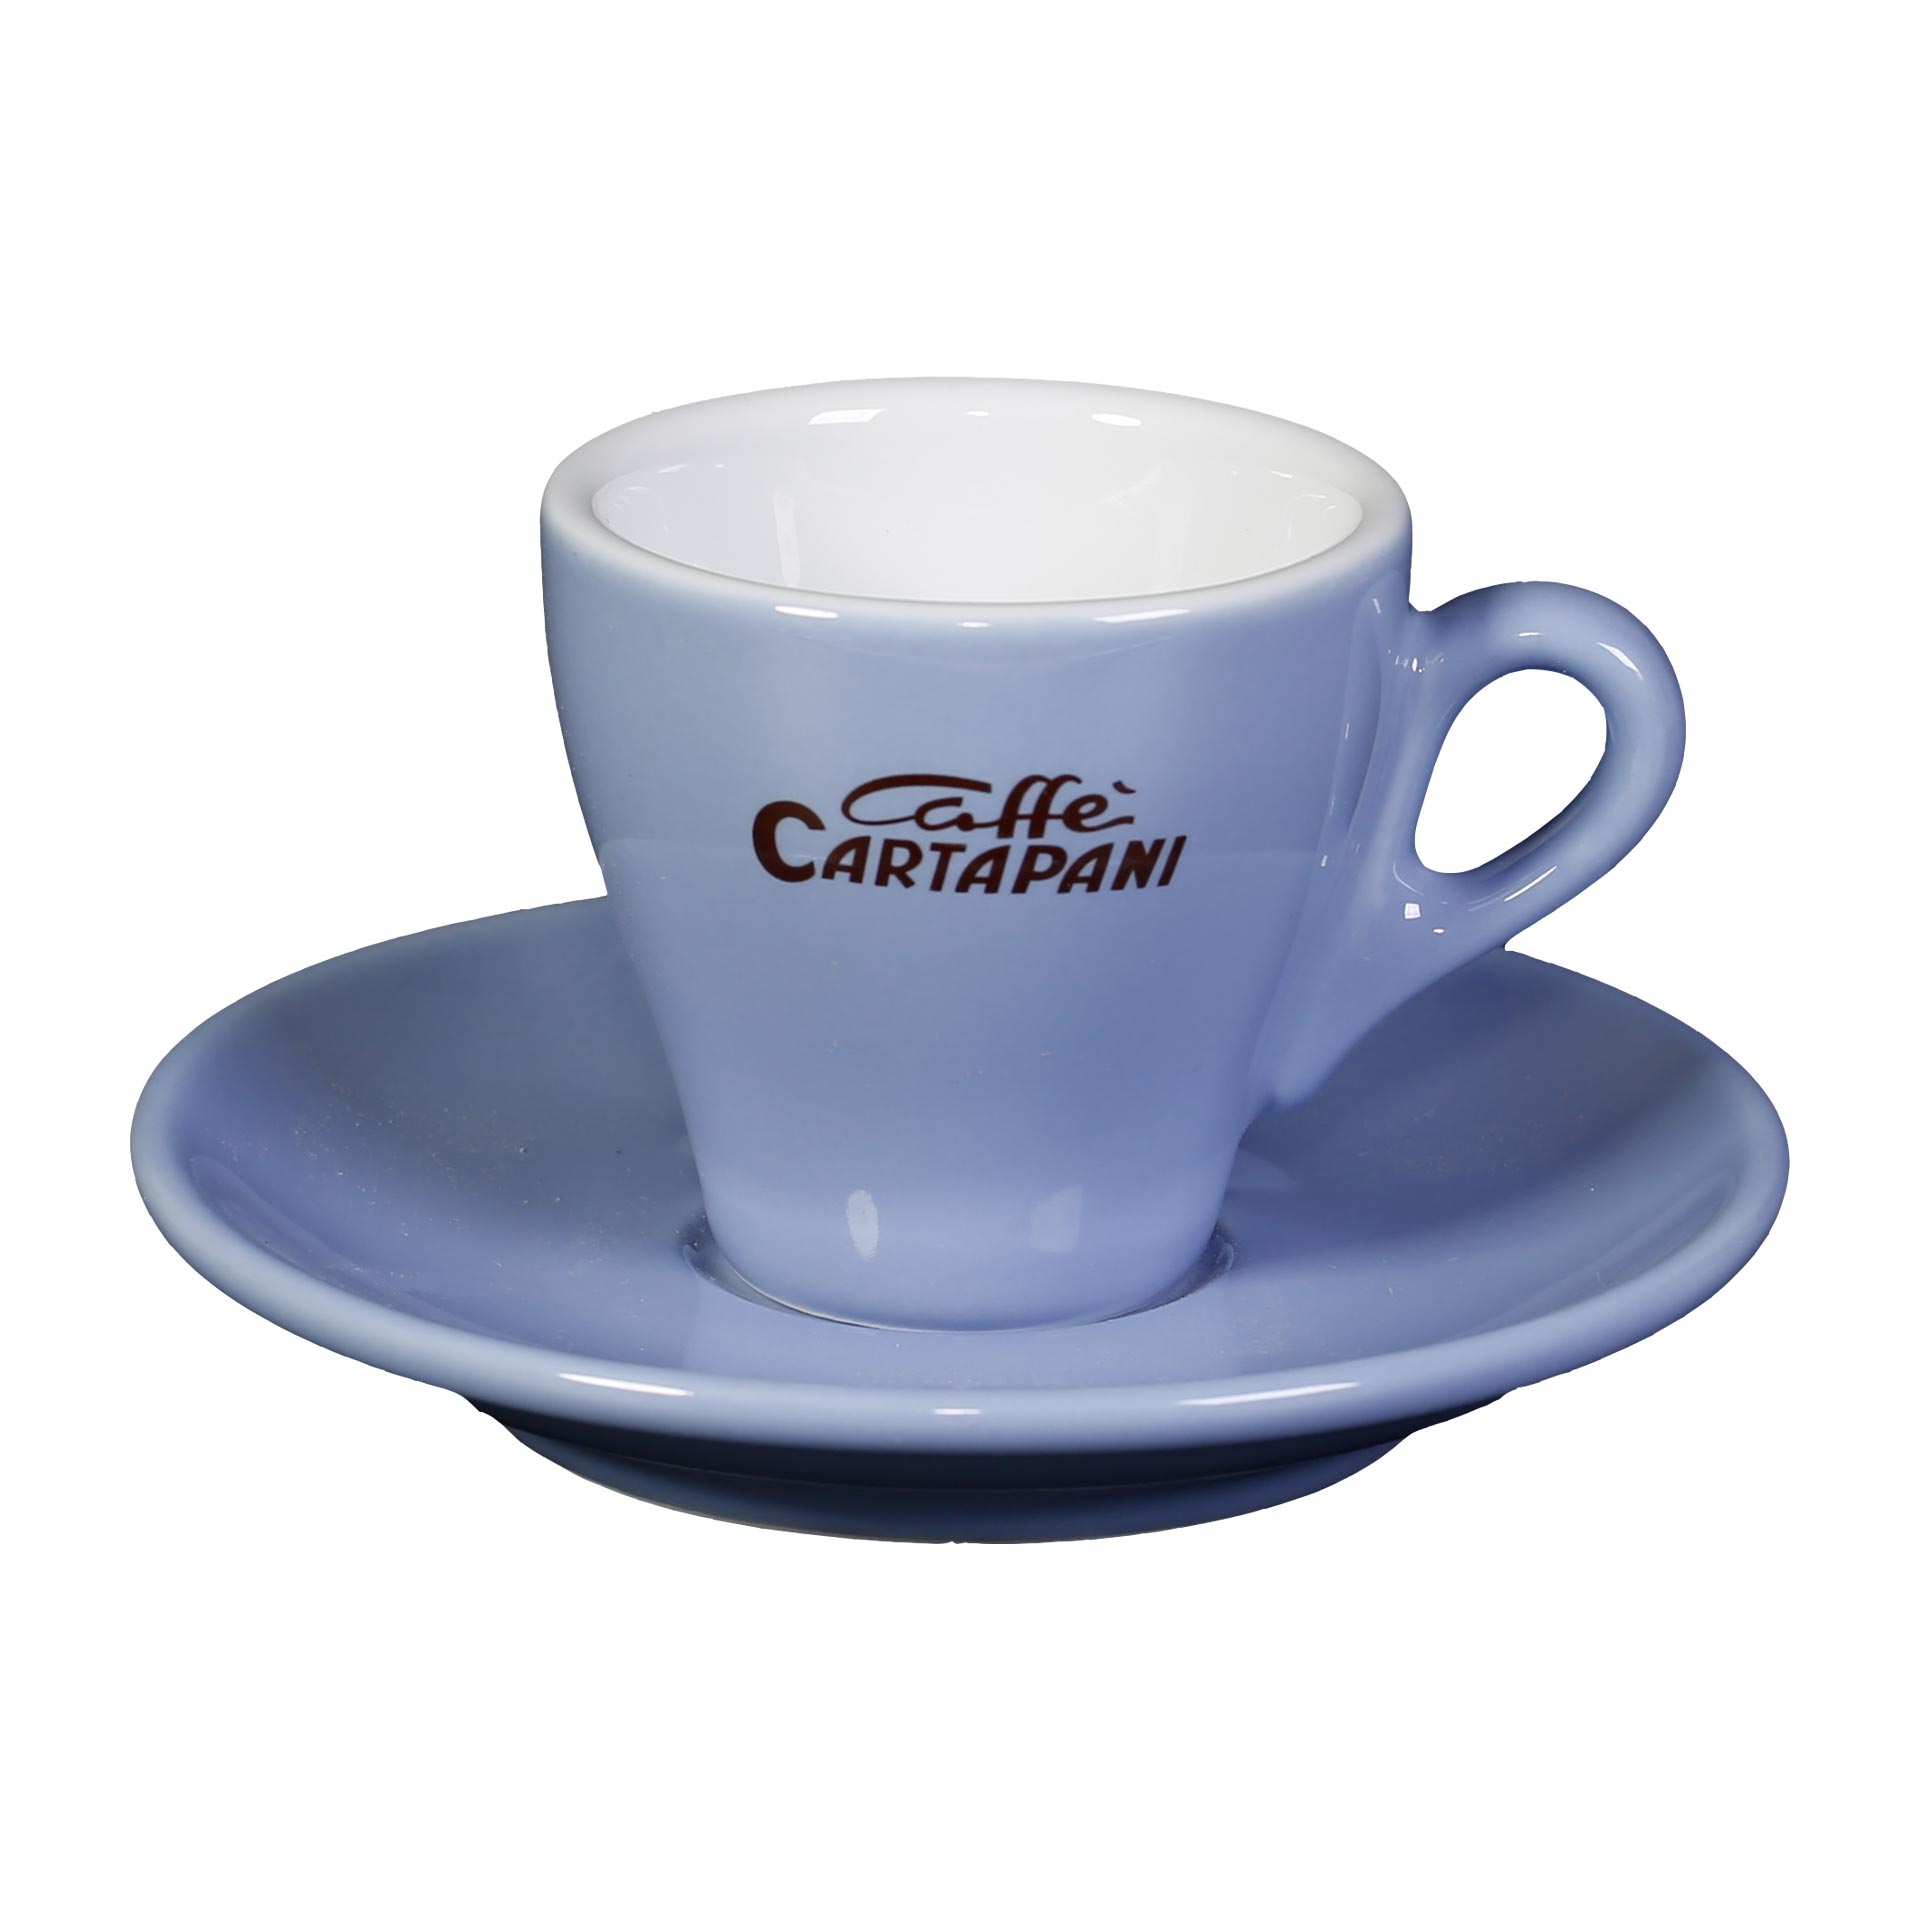 Caffè Cartapani Espressotasse, blau